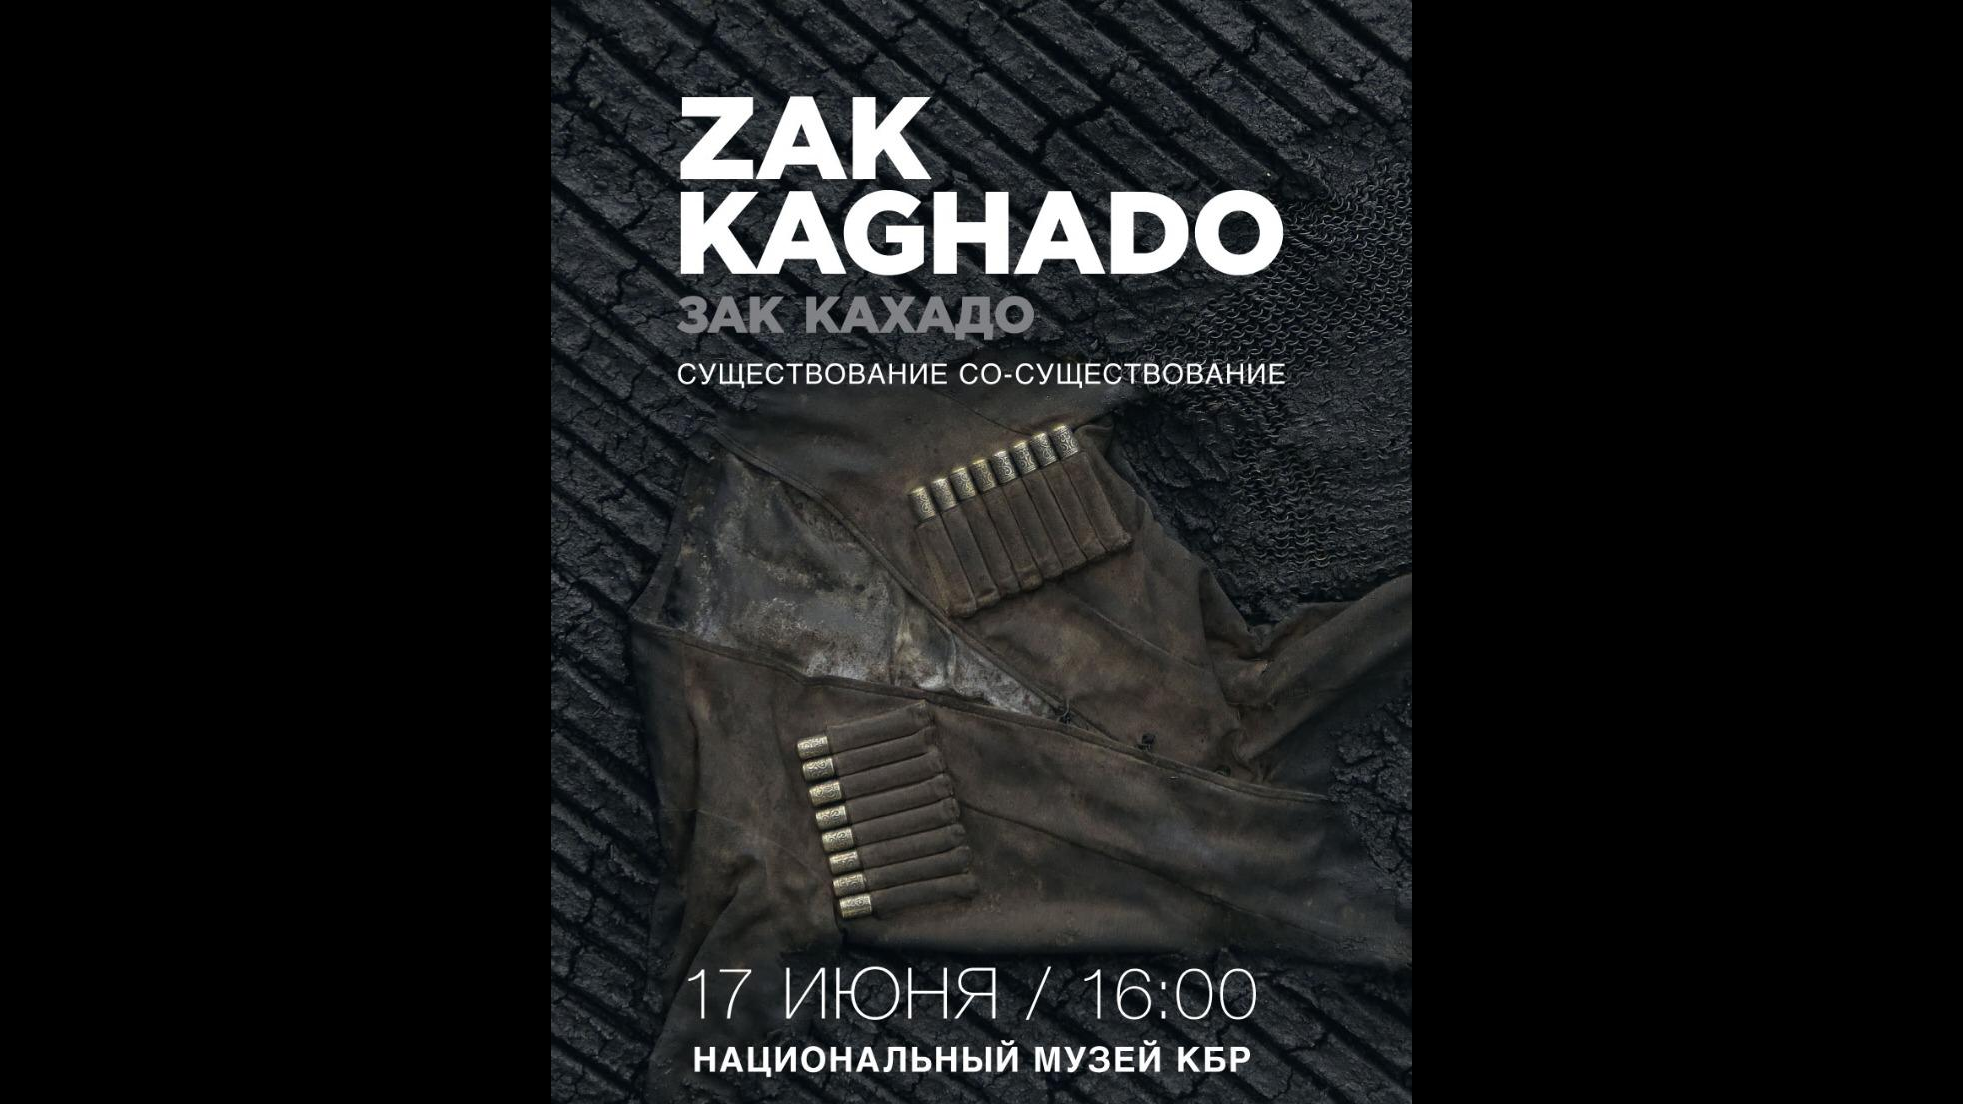 В Национальном музее КБР состоится выставка Зака Кахадо